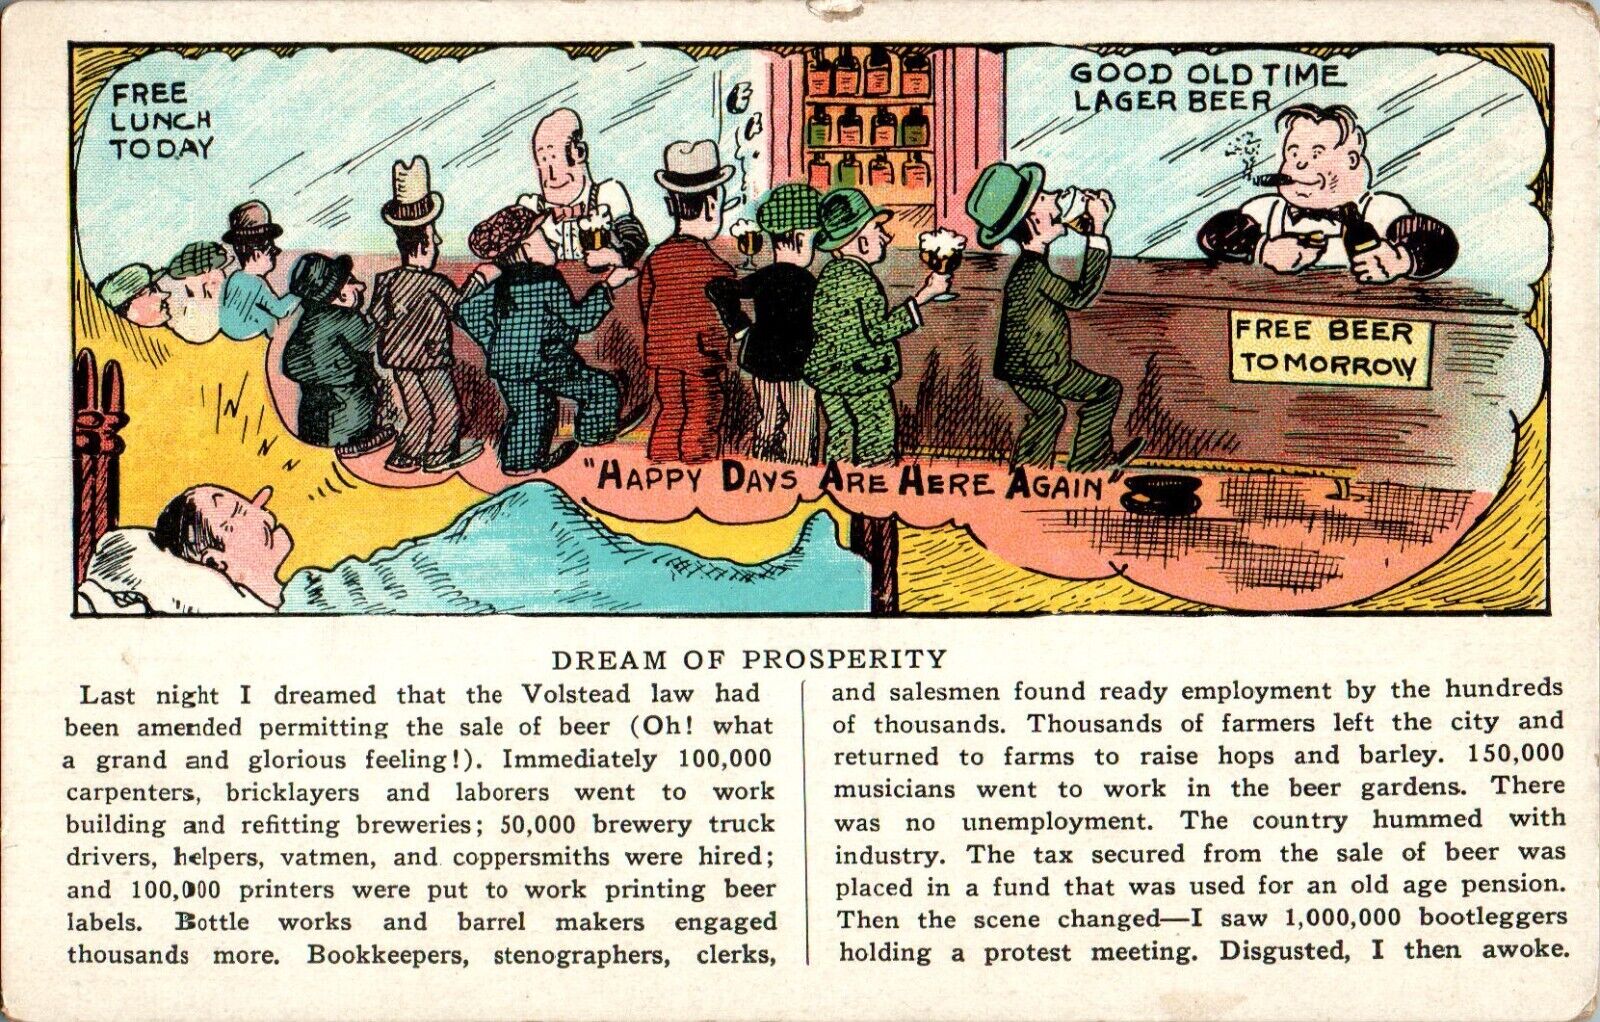 Dream of Prosperity, Prohibition, Depression Era Humor Postcard